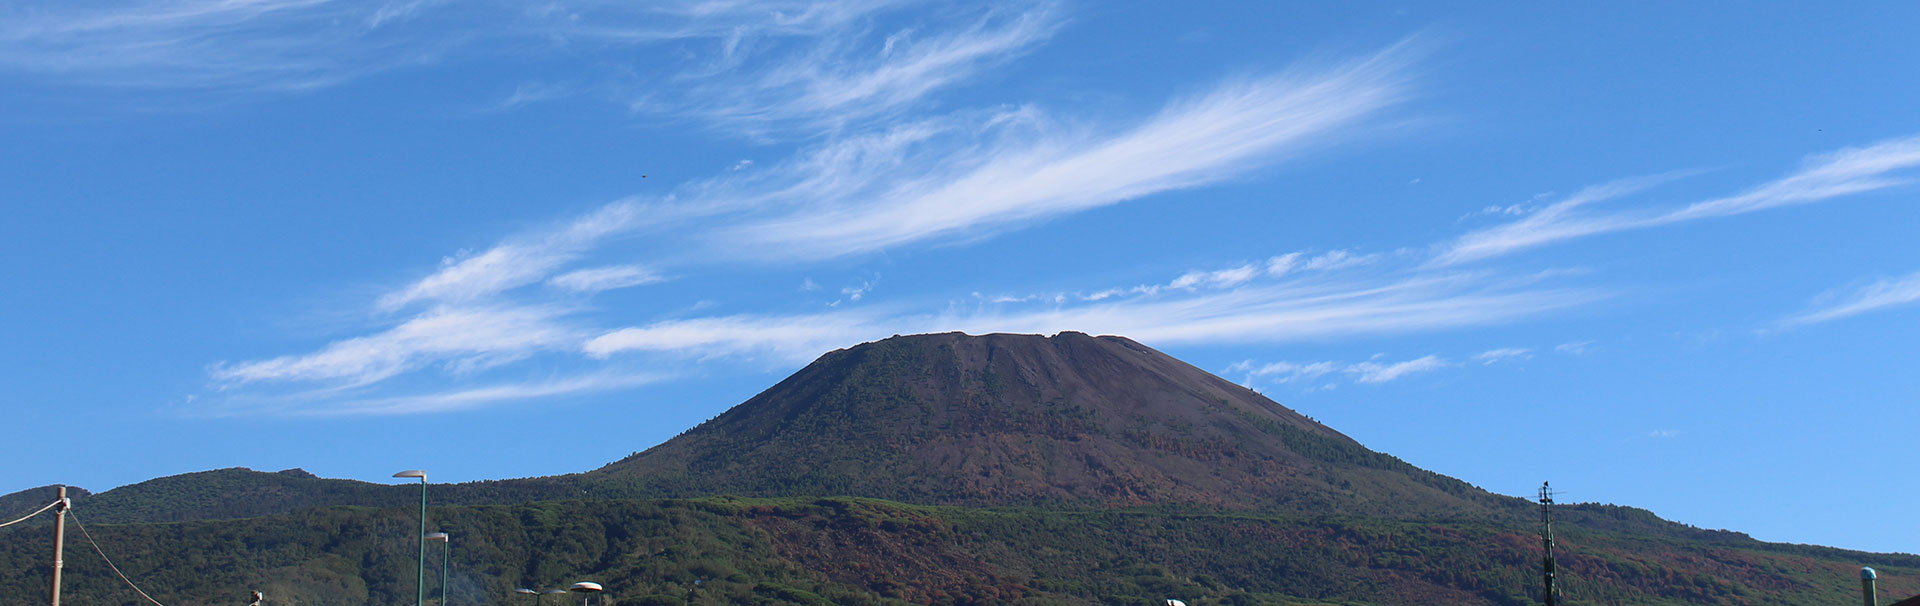 Subindo um vulcão adormecido , como chegamos no Vesúvio